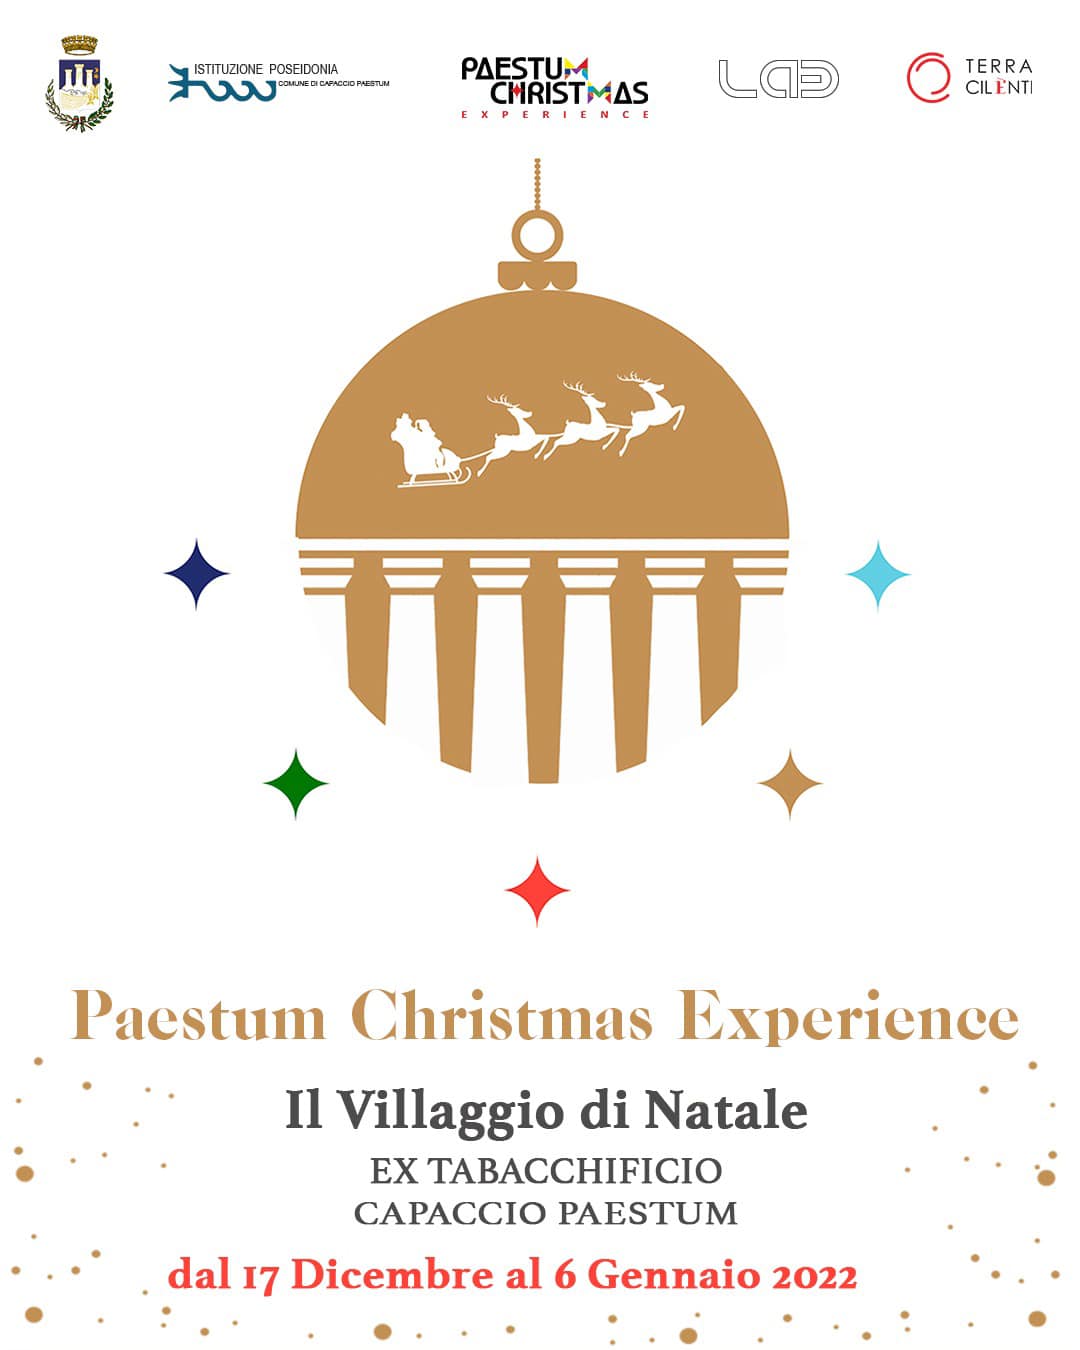 Capaccio Paestum: Paestum Christmas Experience, Villaggio di Natale all ’ex Tabacchificio